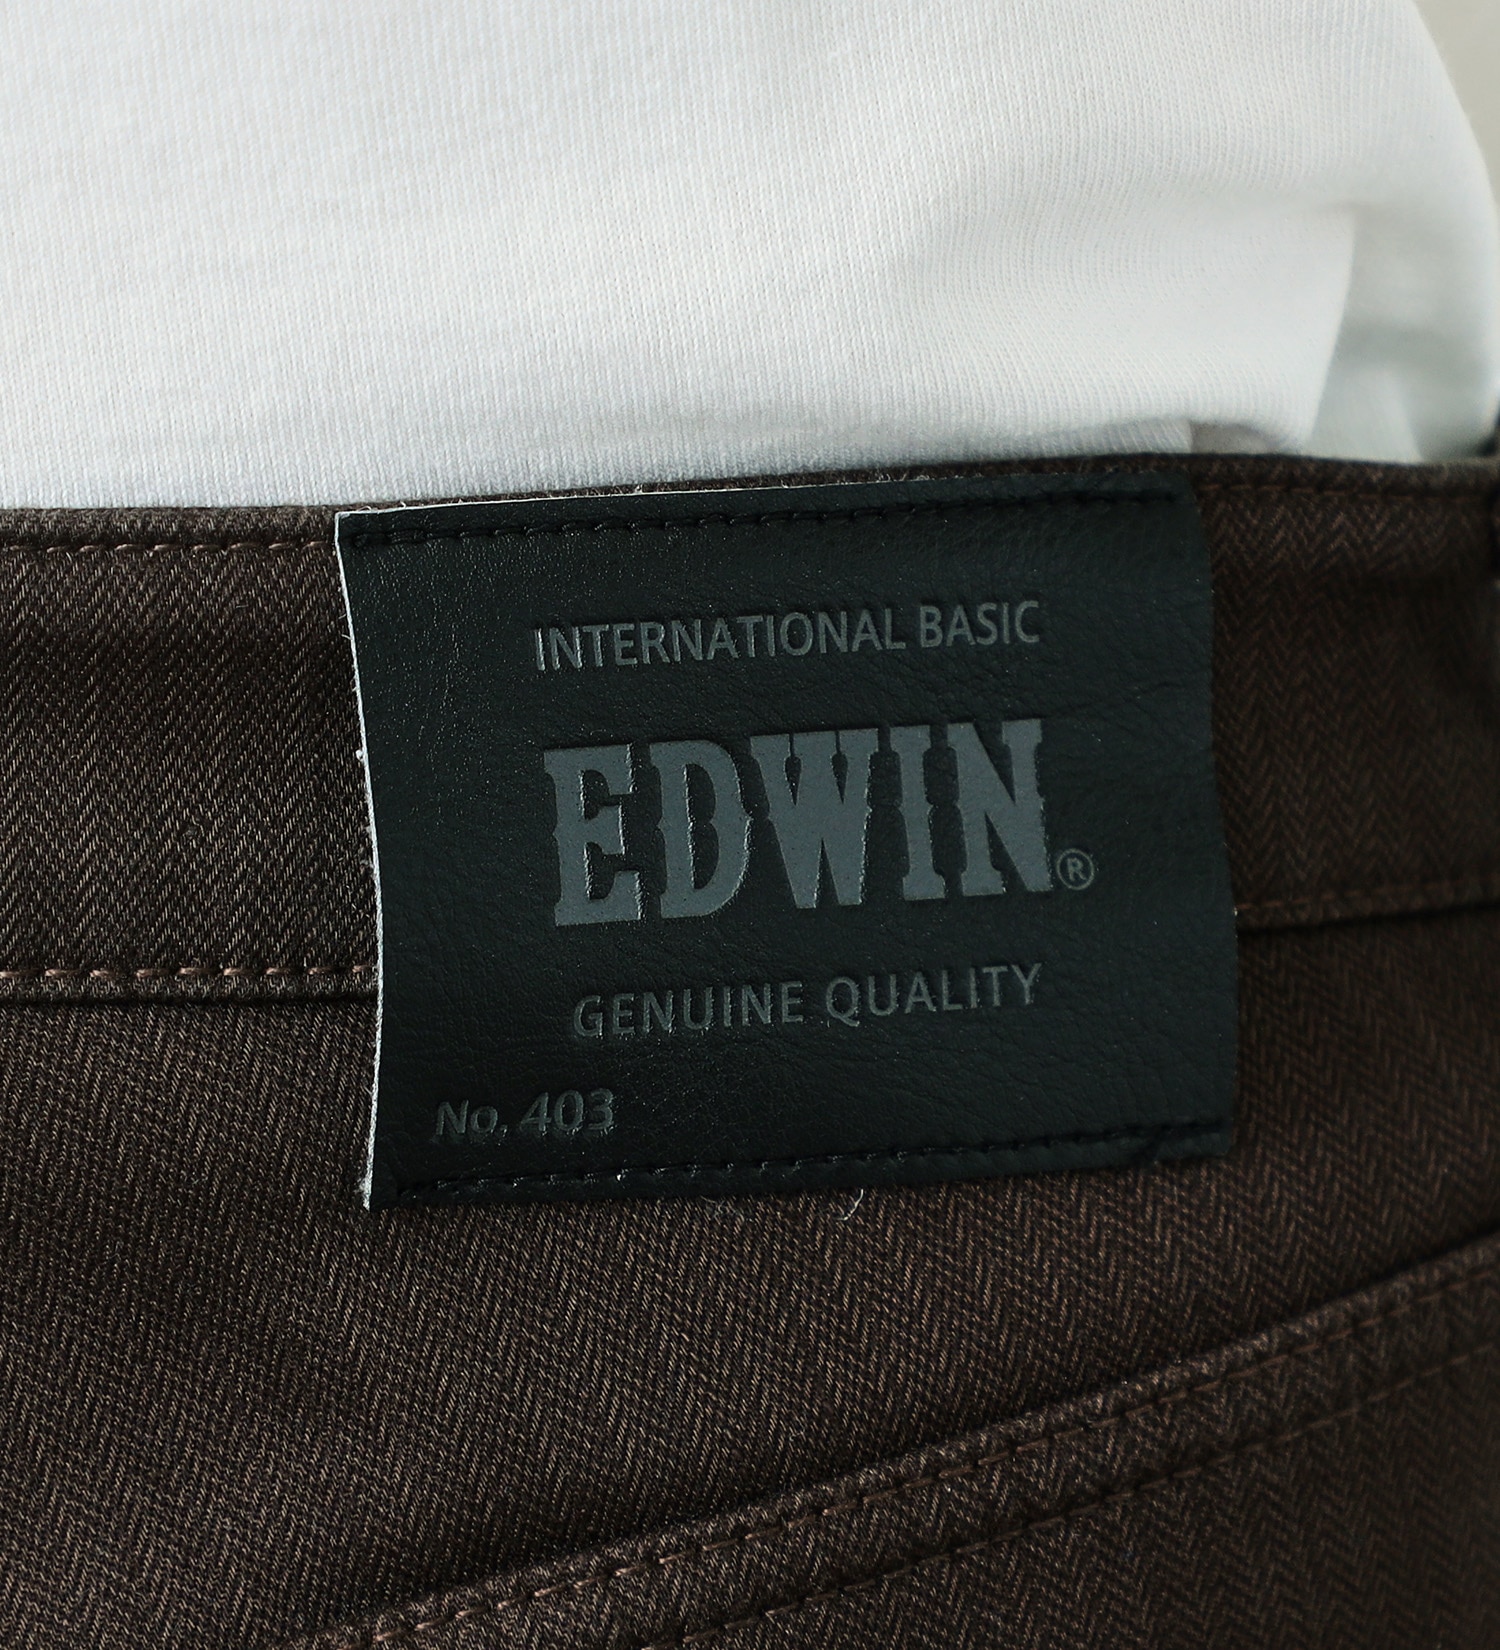 EDWIN(エドウイン)の【先行SALE】2層で暖かい EDWIN インターナショナルベーシック レギュラーストレートパンツ403 WILD FIRE 2層ボンディング構造 【暖】|パンツ/パンツ/メンズ|ブラウン